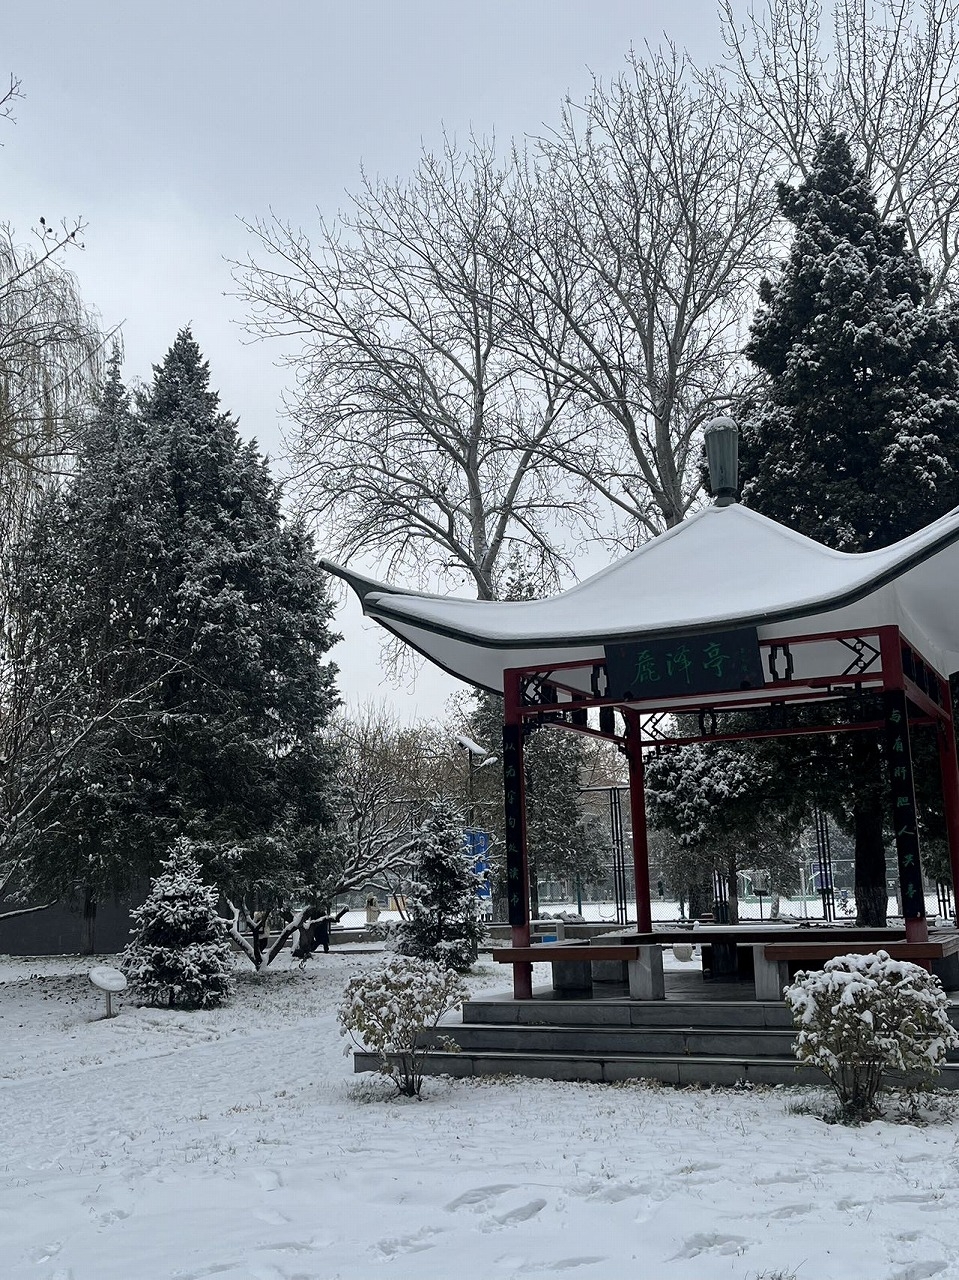 キャンパスの雪景色